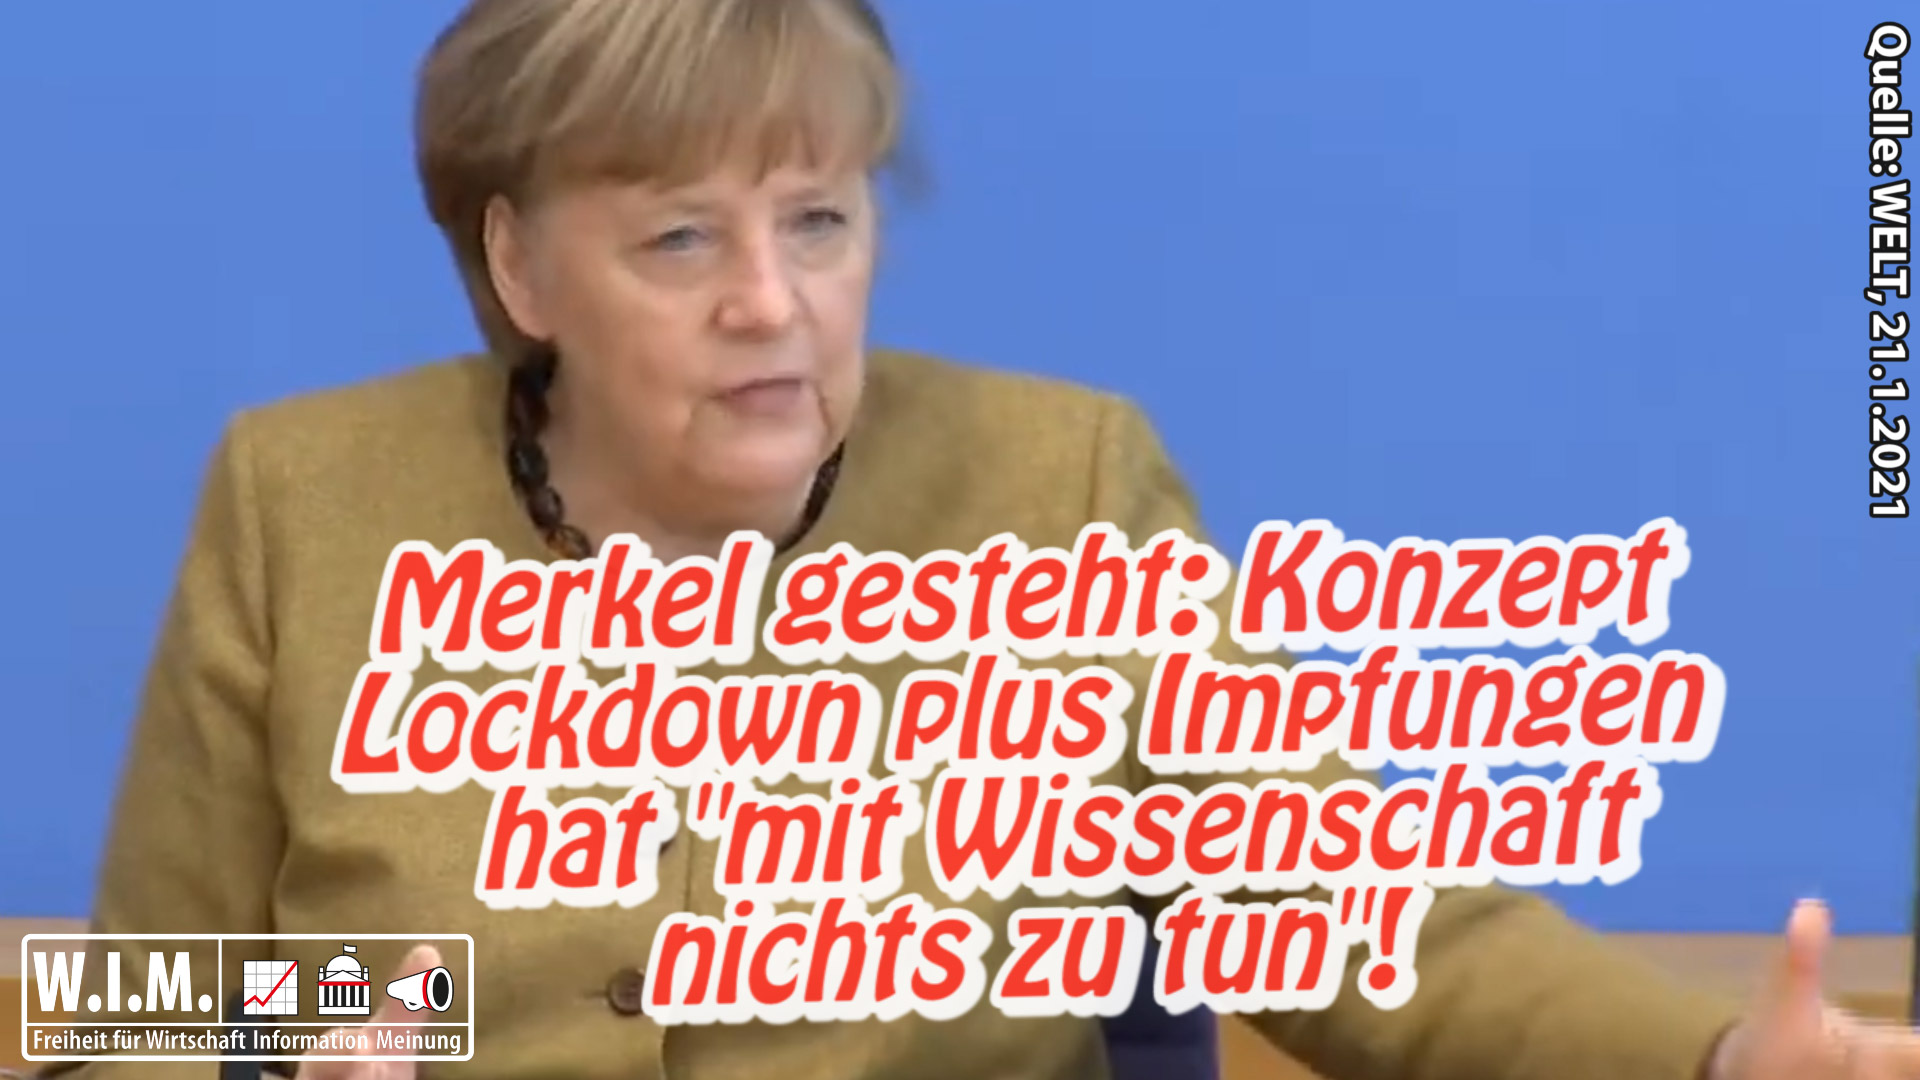 Merkel gesteht: Lockdown und Impfungen haben "mit Wissenschaft nichts zu tun"!